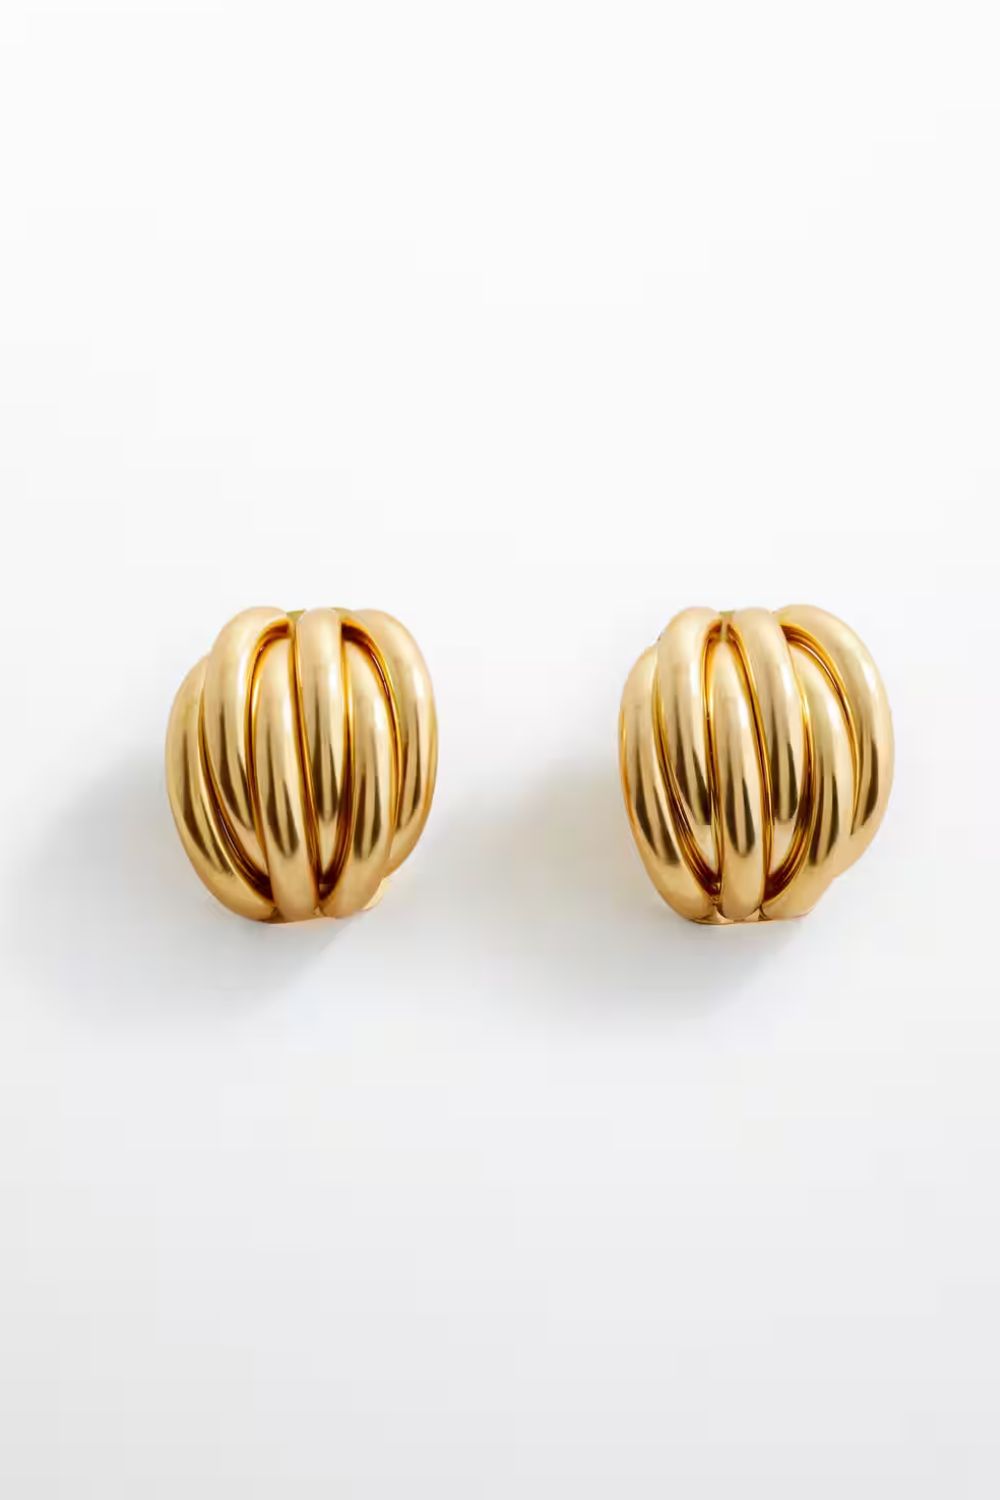 Mango gold earrings